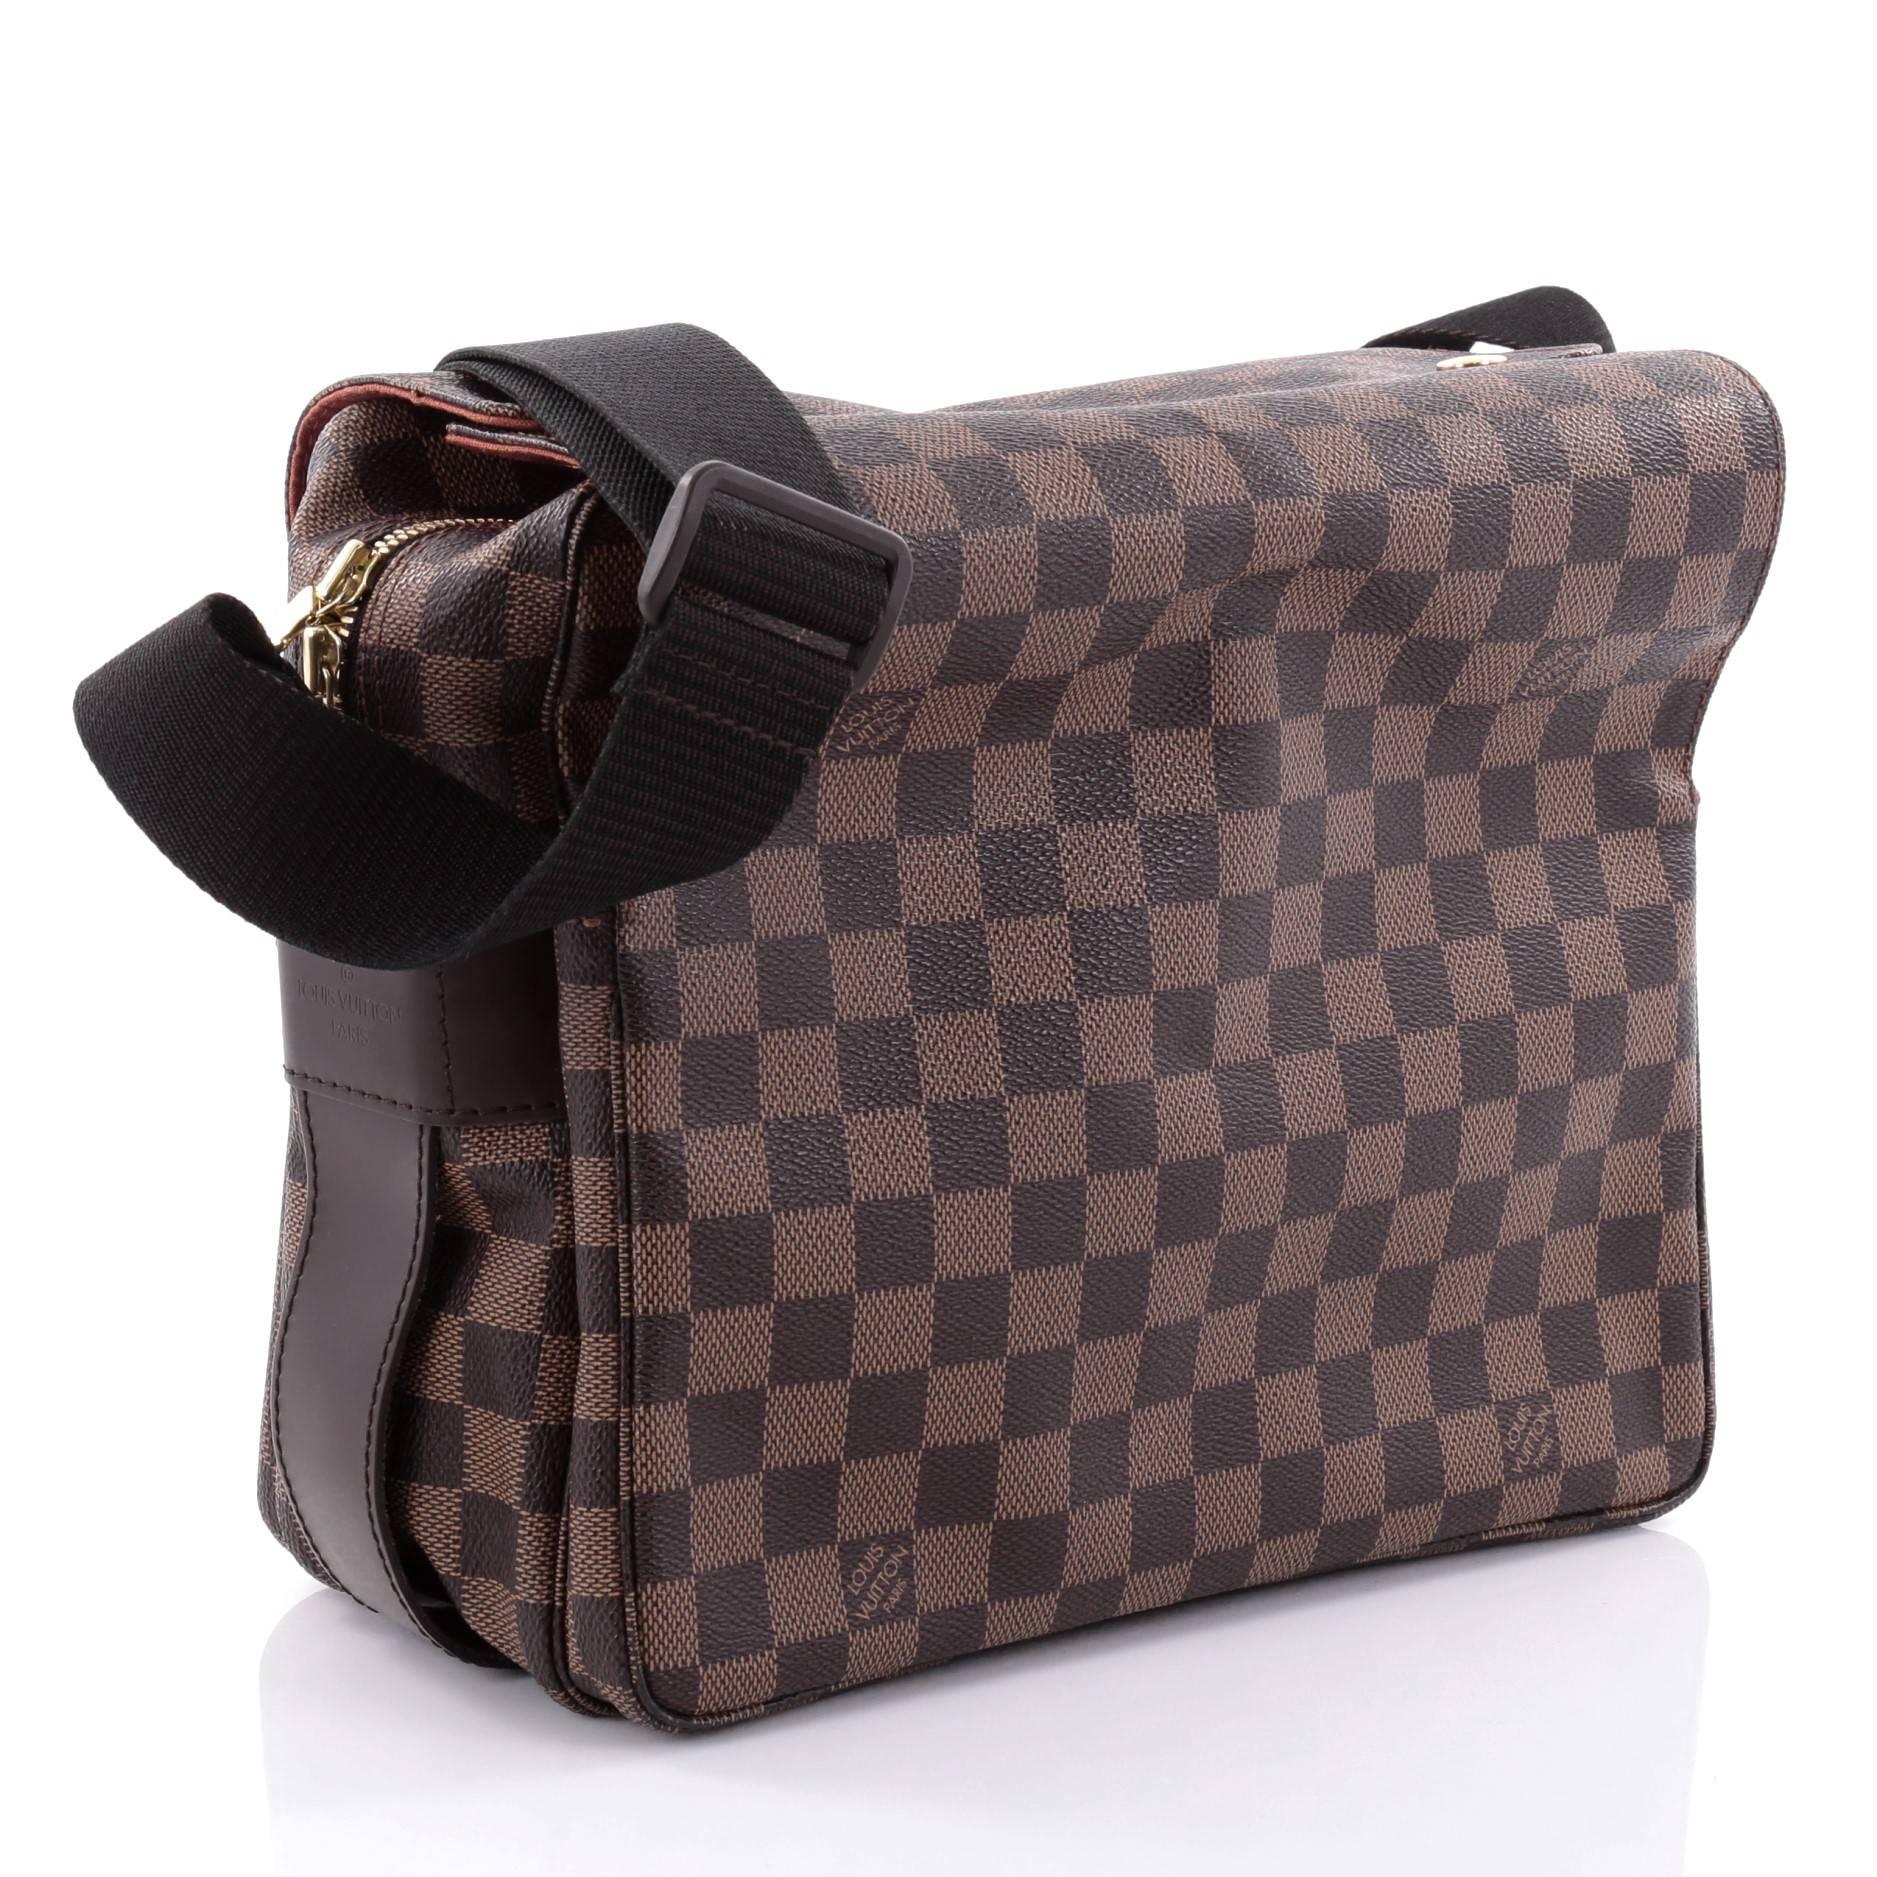 Black Louis Vuitton Naviglio Handbag Damier